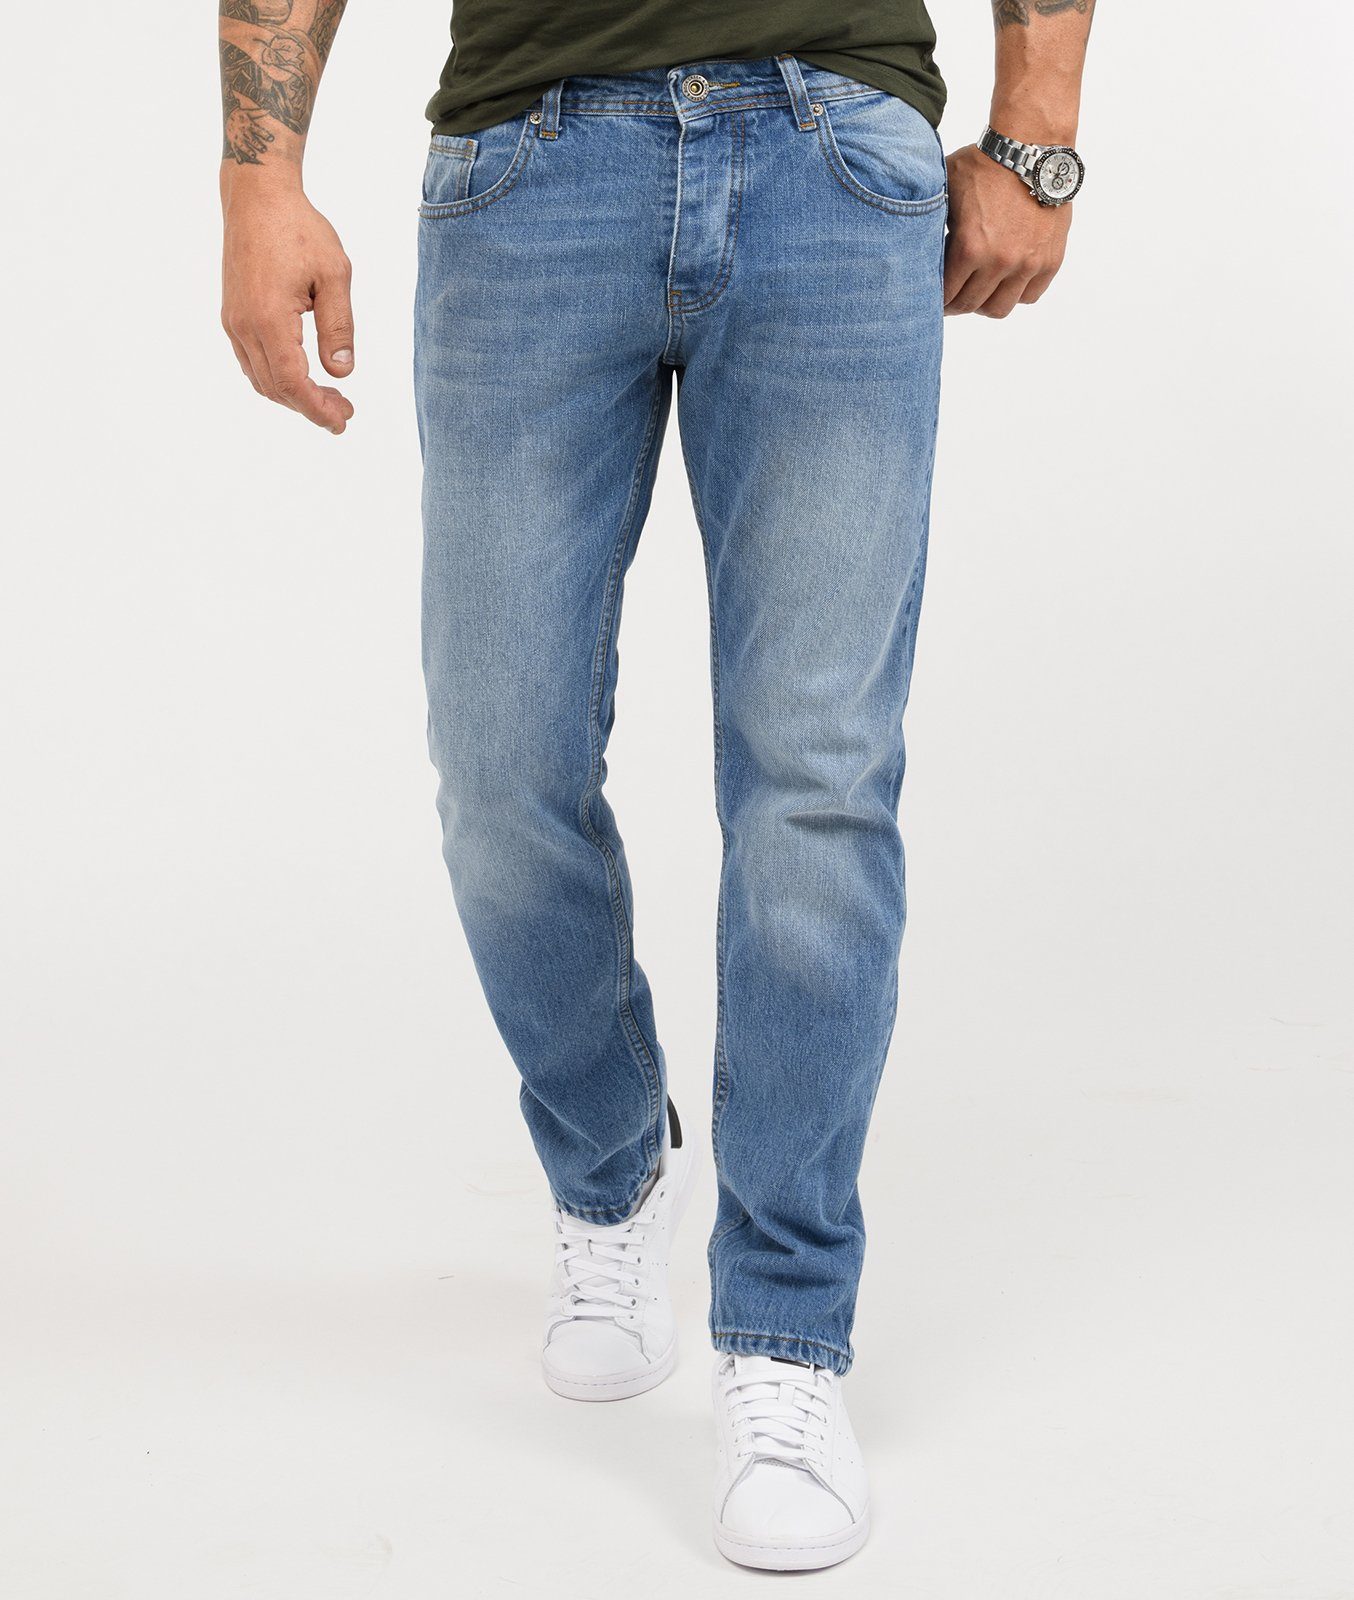 Jeans Herren in großen Größen » Jeans in Übergrößen | OTTO